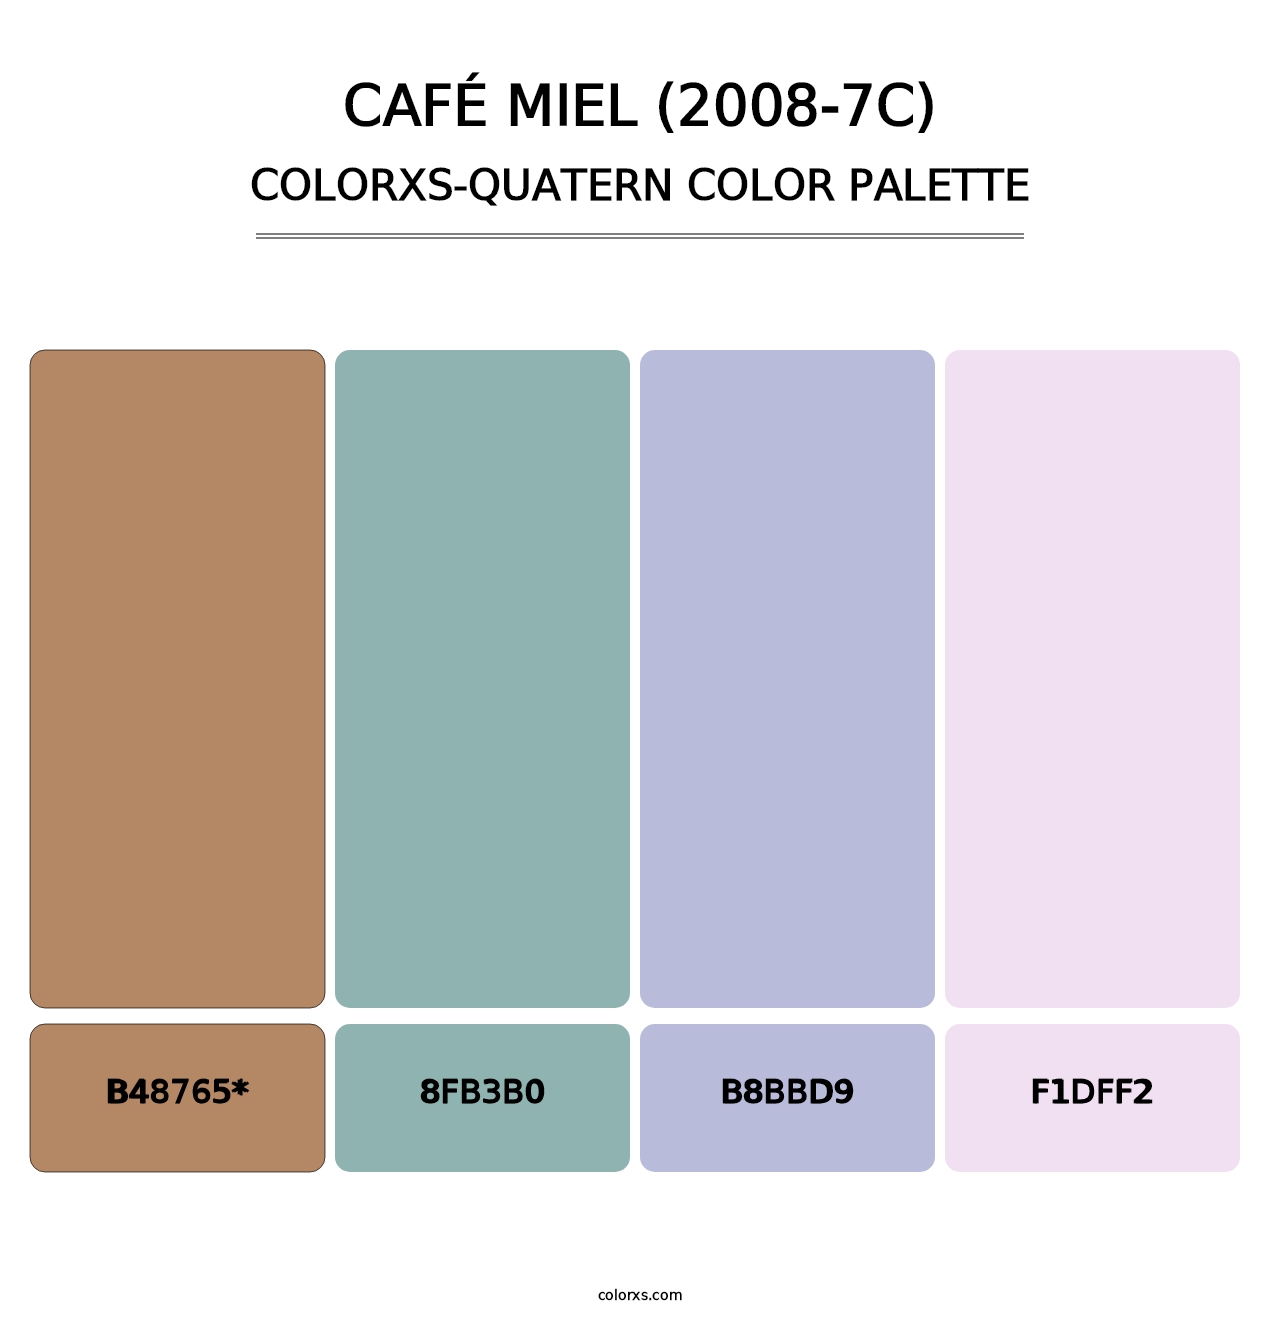 Café Miel (2008-7C) - Colorxs Quatern Palette